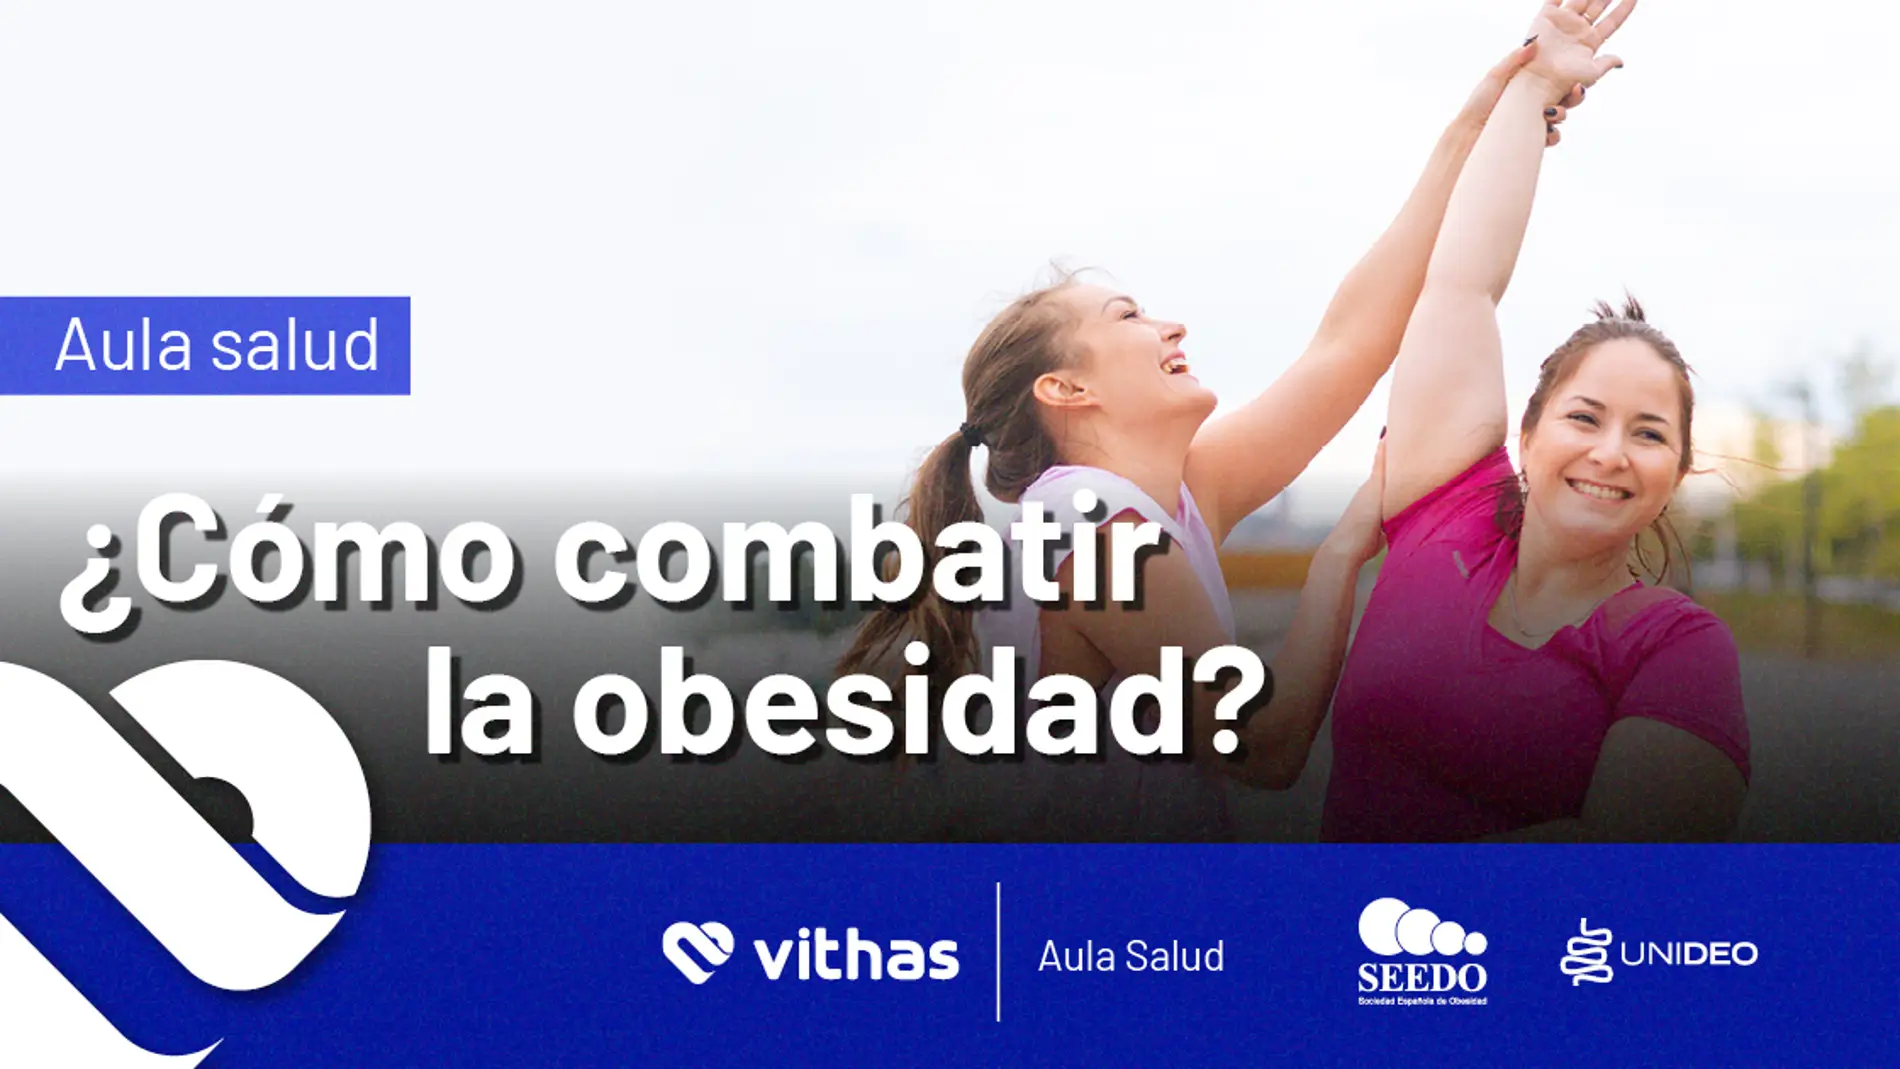 Vithas Málaga y SEEDO organizan un Aula Salud sobre los beneficios del ejercicio físico en la prevención de la obesidad